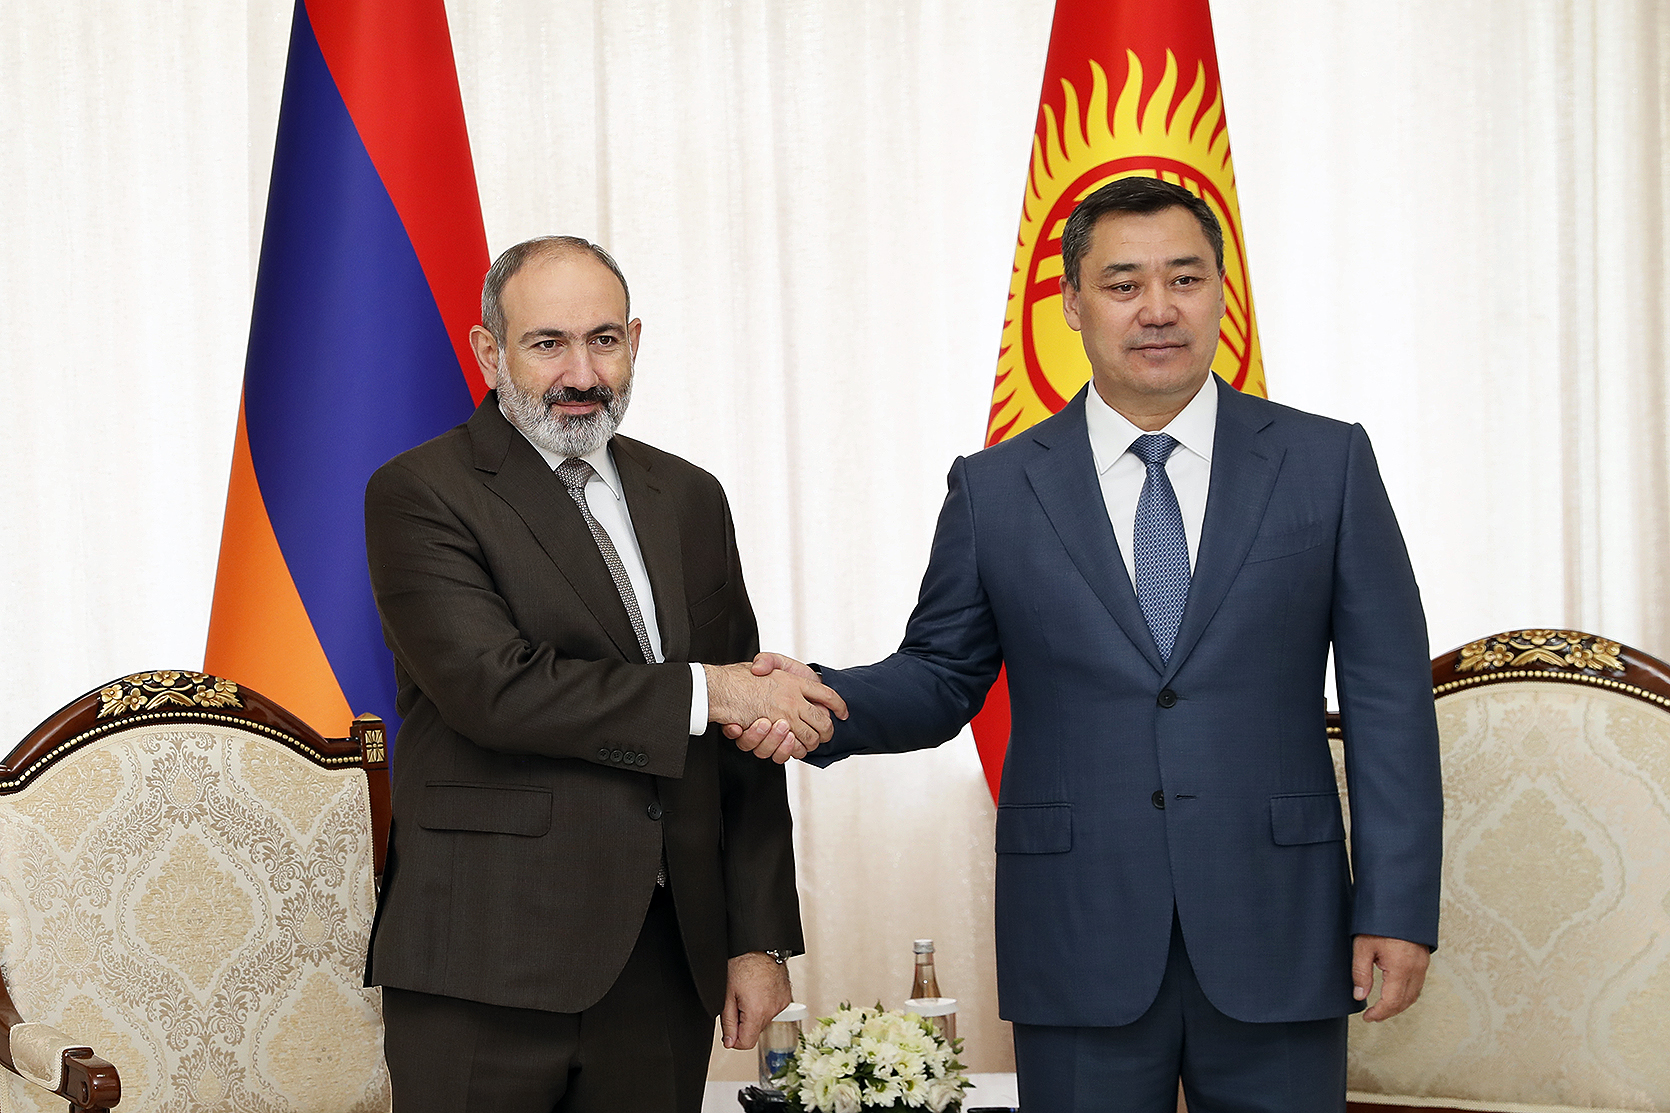 Հայաստանի վարչապետը և Ղրղզստանի նախագահը գոհունակություն են հայտնել քաղաքական երկխոսության բարձր մակարդակից և վերահաստատել փոխգործակցությունը զարգացնելու պատրաստակամությունը